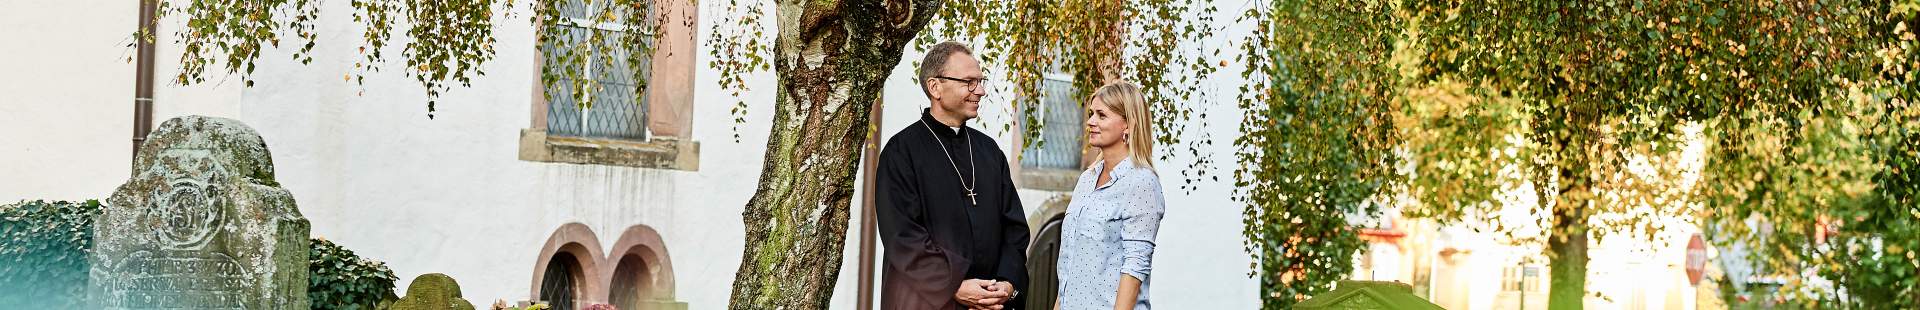 VRK Amts- und Vermögensschaden-Haftpflichtversicherung – Ein Kirchenbeamter steht mit einer Frau vor einem Kirchengebäude.